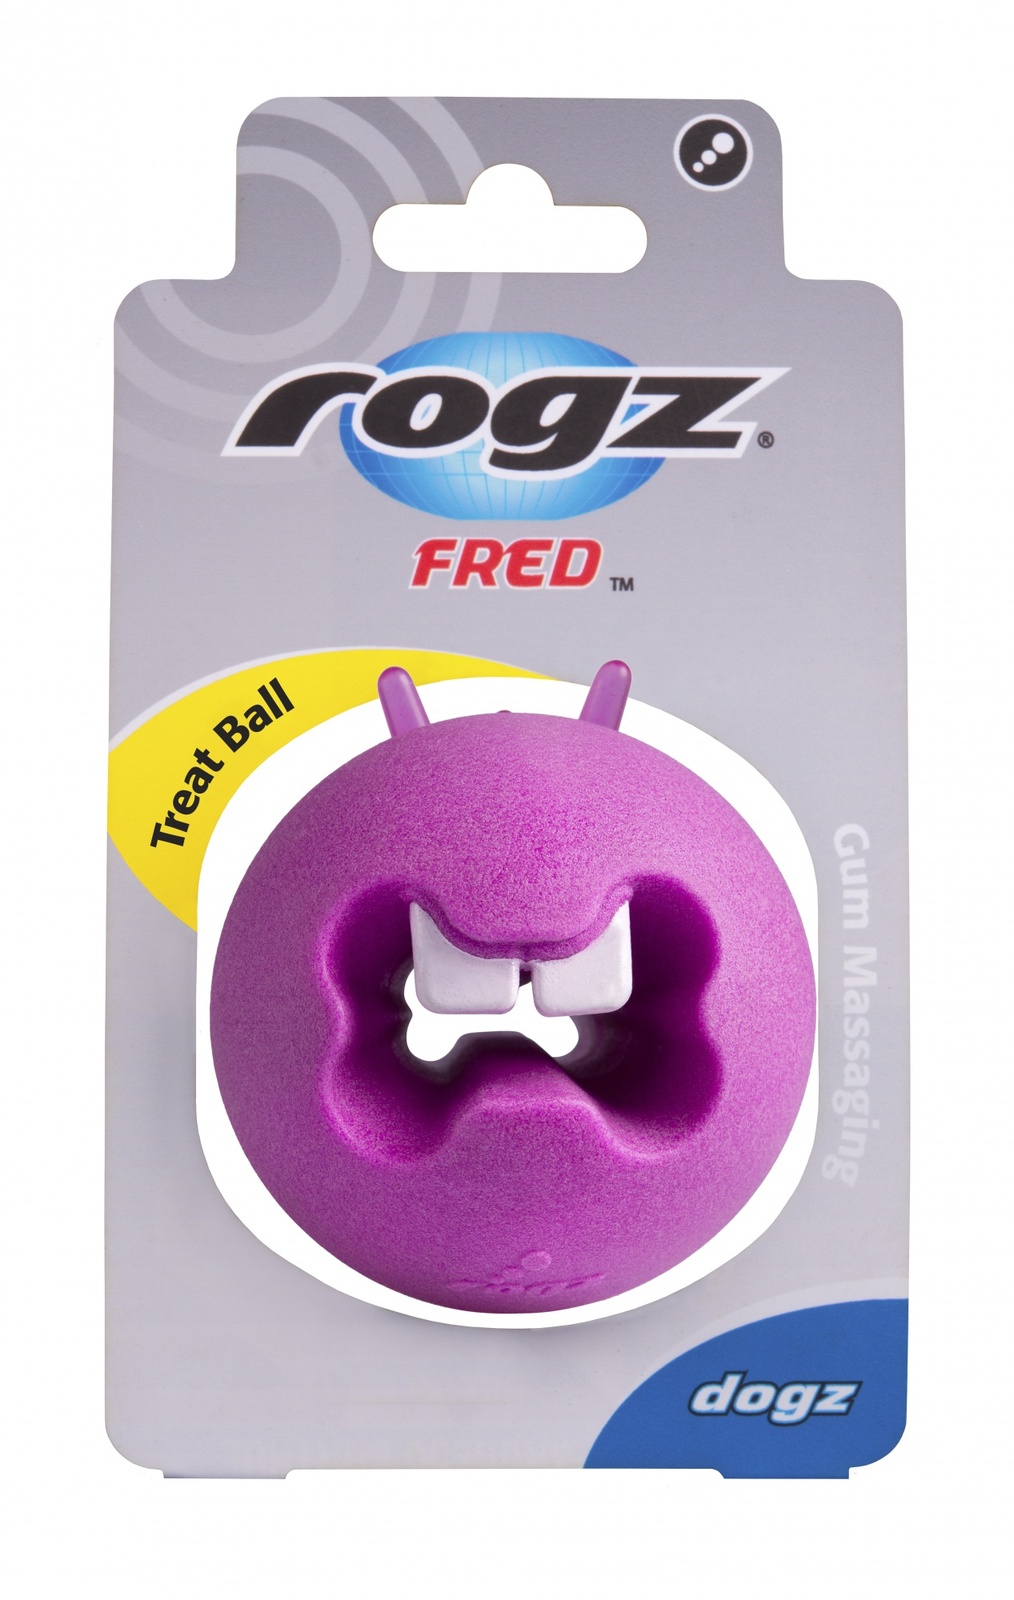 Rogz игрушка с отверстиями для лакомств и массажными насечками, средняя, розовая (50 г) Rogz игрушка с отверстиями для лакомств и массажными насечками, средняя, розовая (50 г) - фото 1